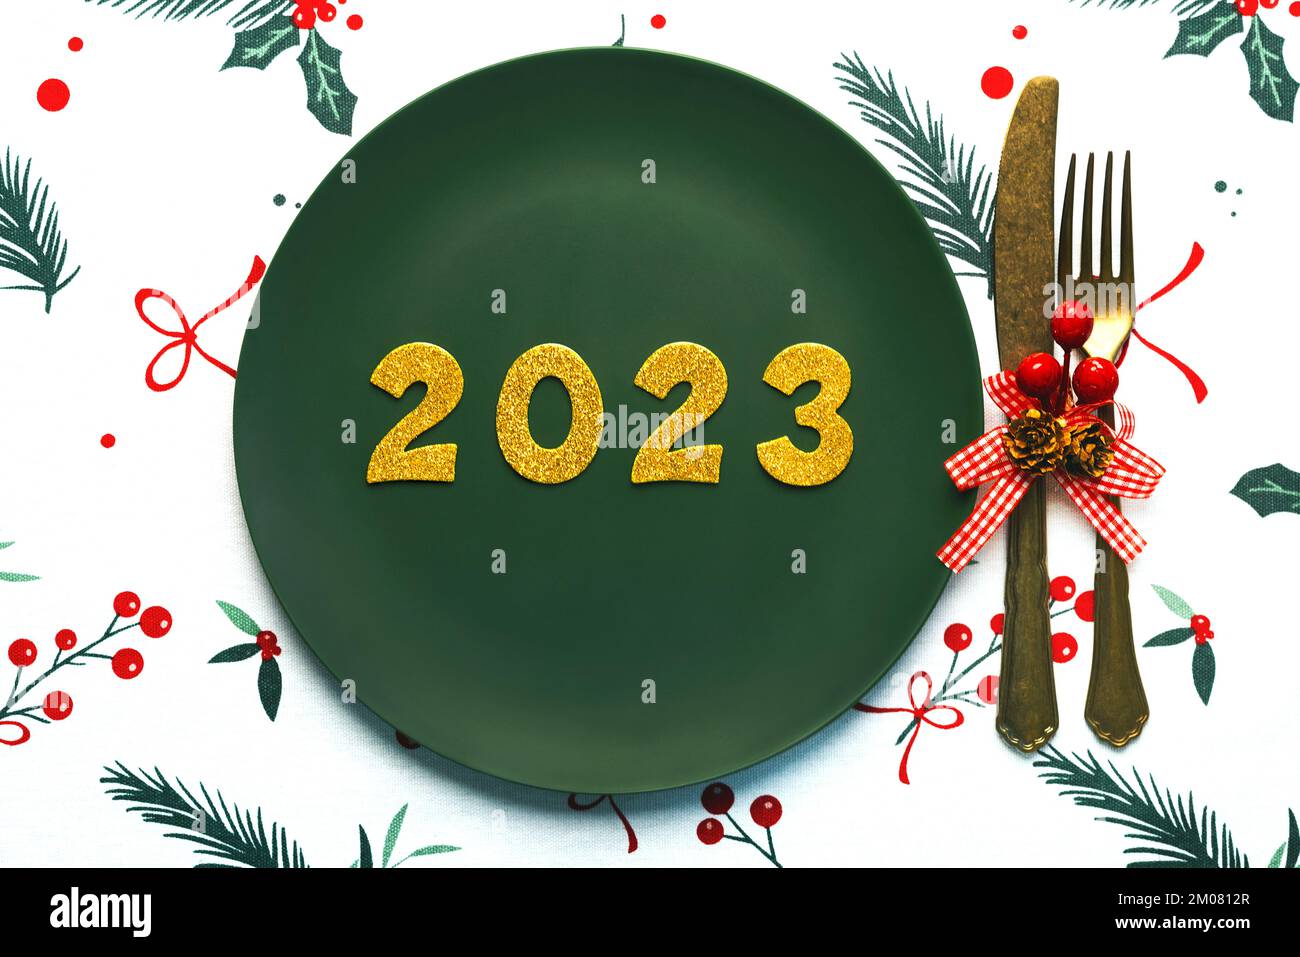 Bonne année 2023. Vue de dessus des numéros dorés 2023 sur l'assiette avec des couverts pour le dîner de Noël sur la nappe de noël. Célébration de la Saint-Sylvestre c Banque D'Images